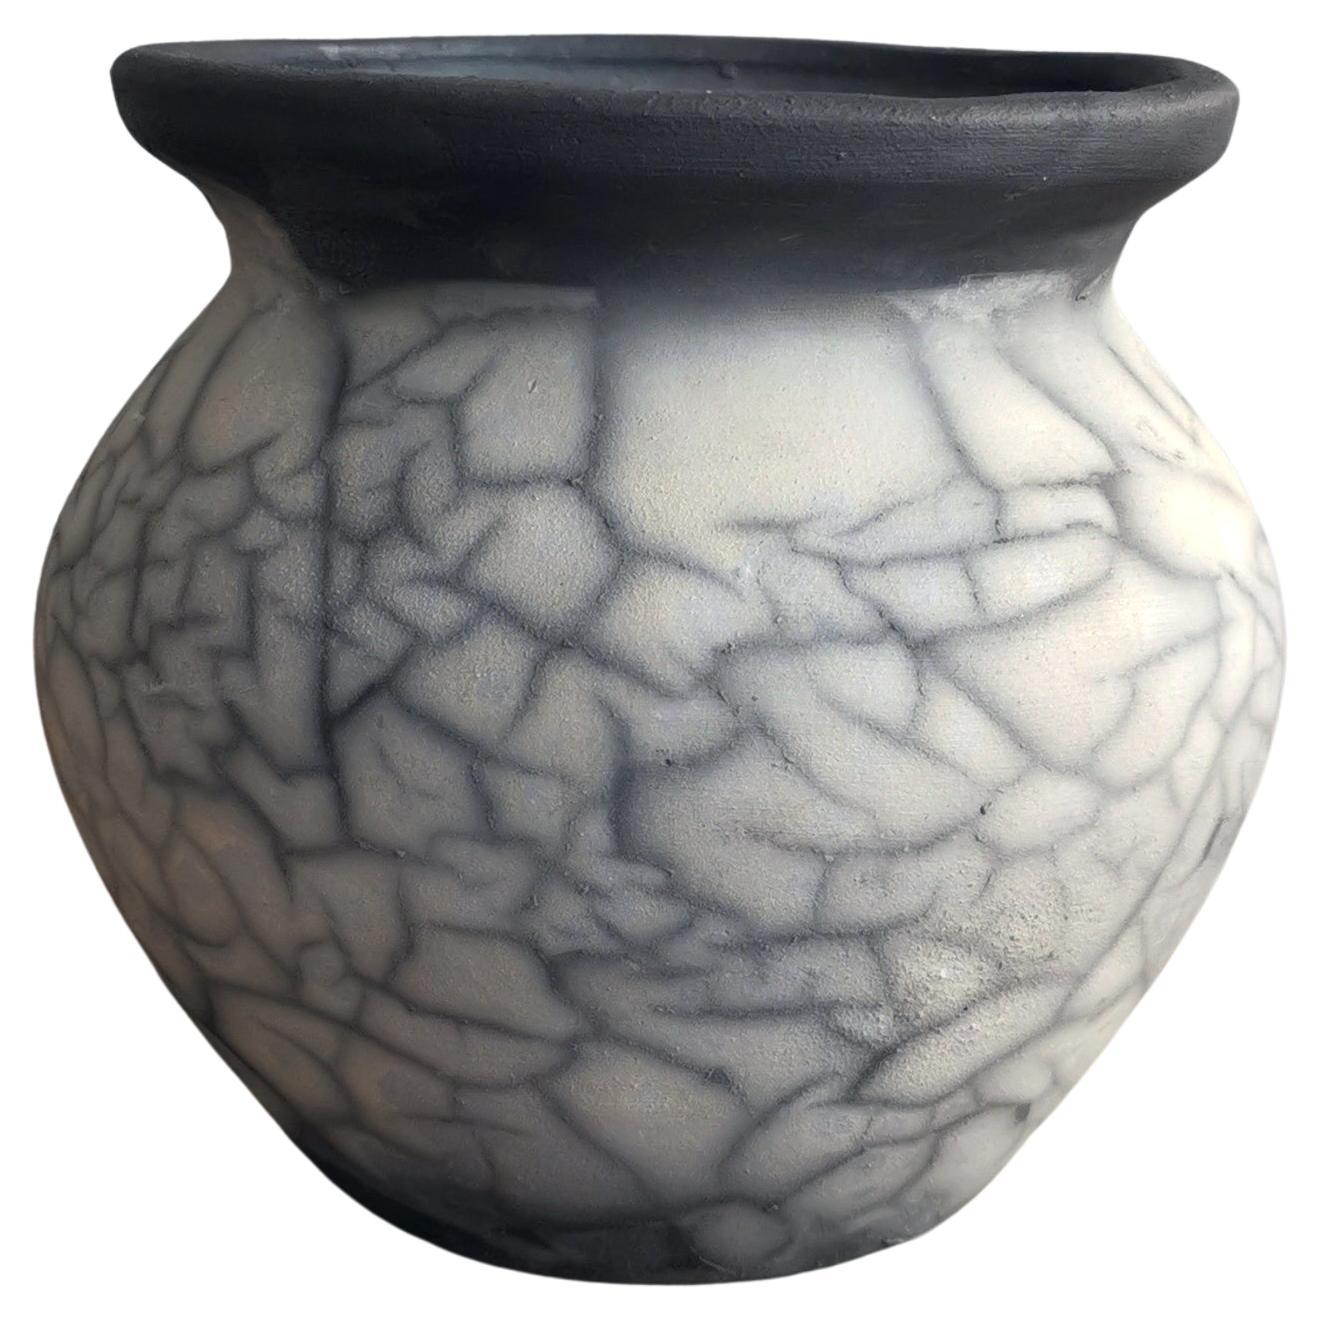 Hofu Raku Keramikvase - Rauch Raku - Handgefertigte Keramik Home Decor Geschenk